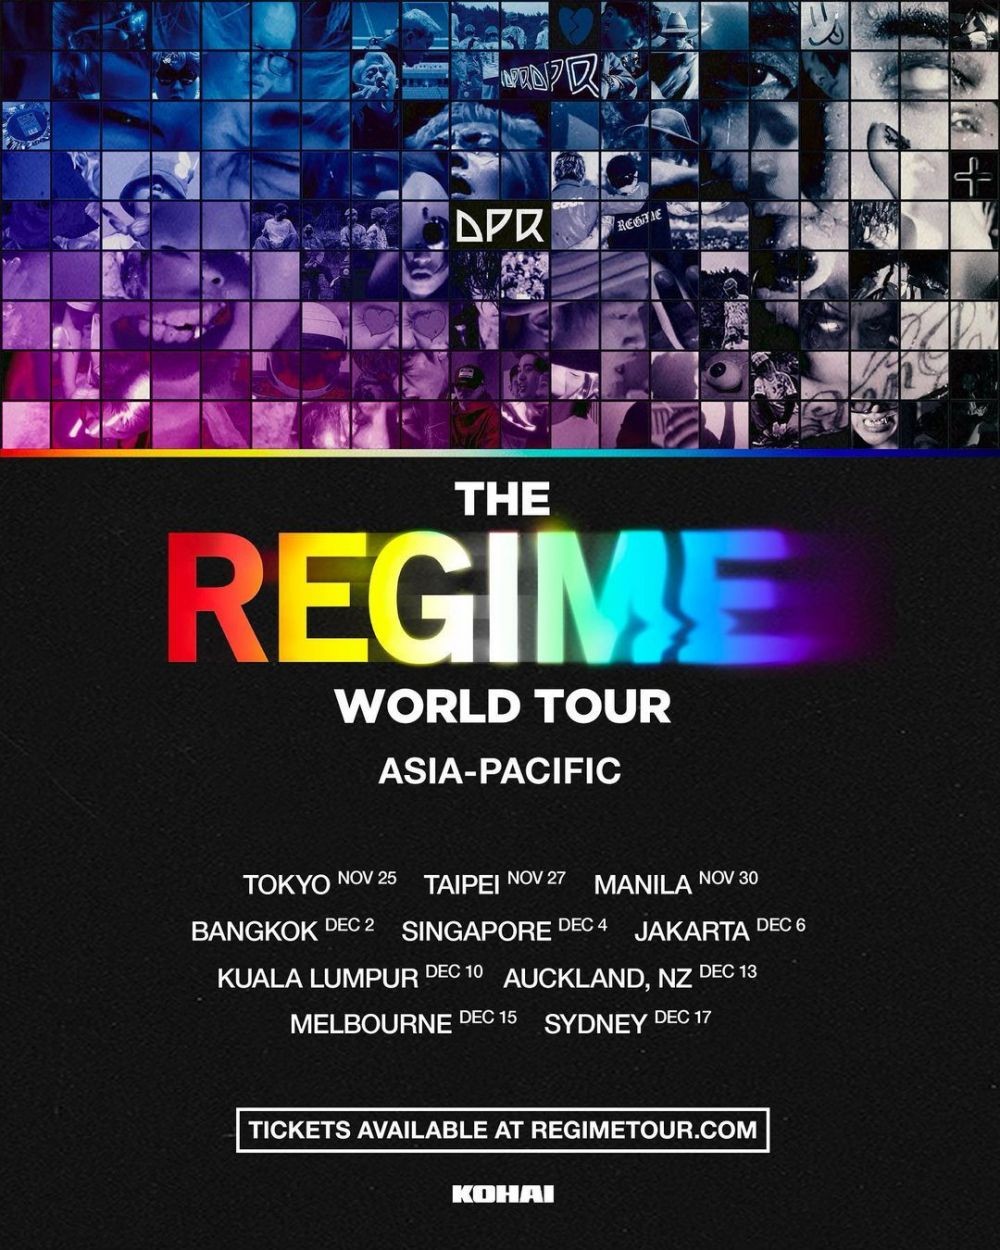 DPR THE REGIME World Tour Singgah di Jakarta, Ini Cara Beli Tiketnya